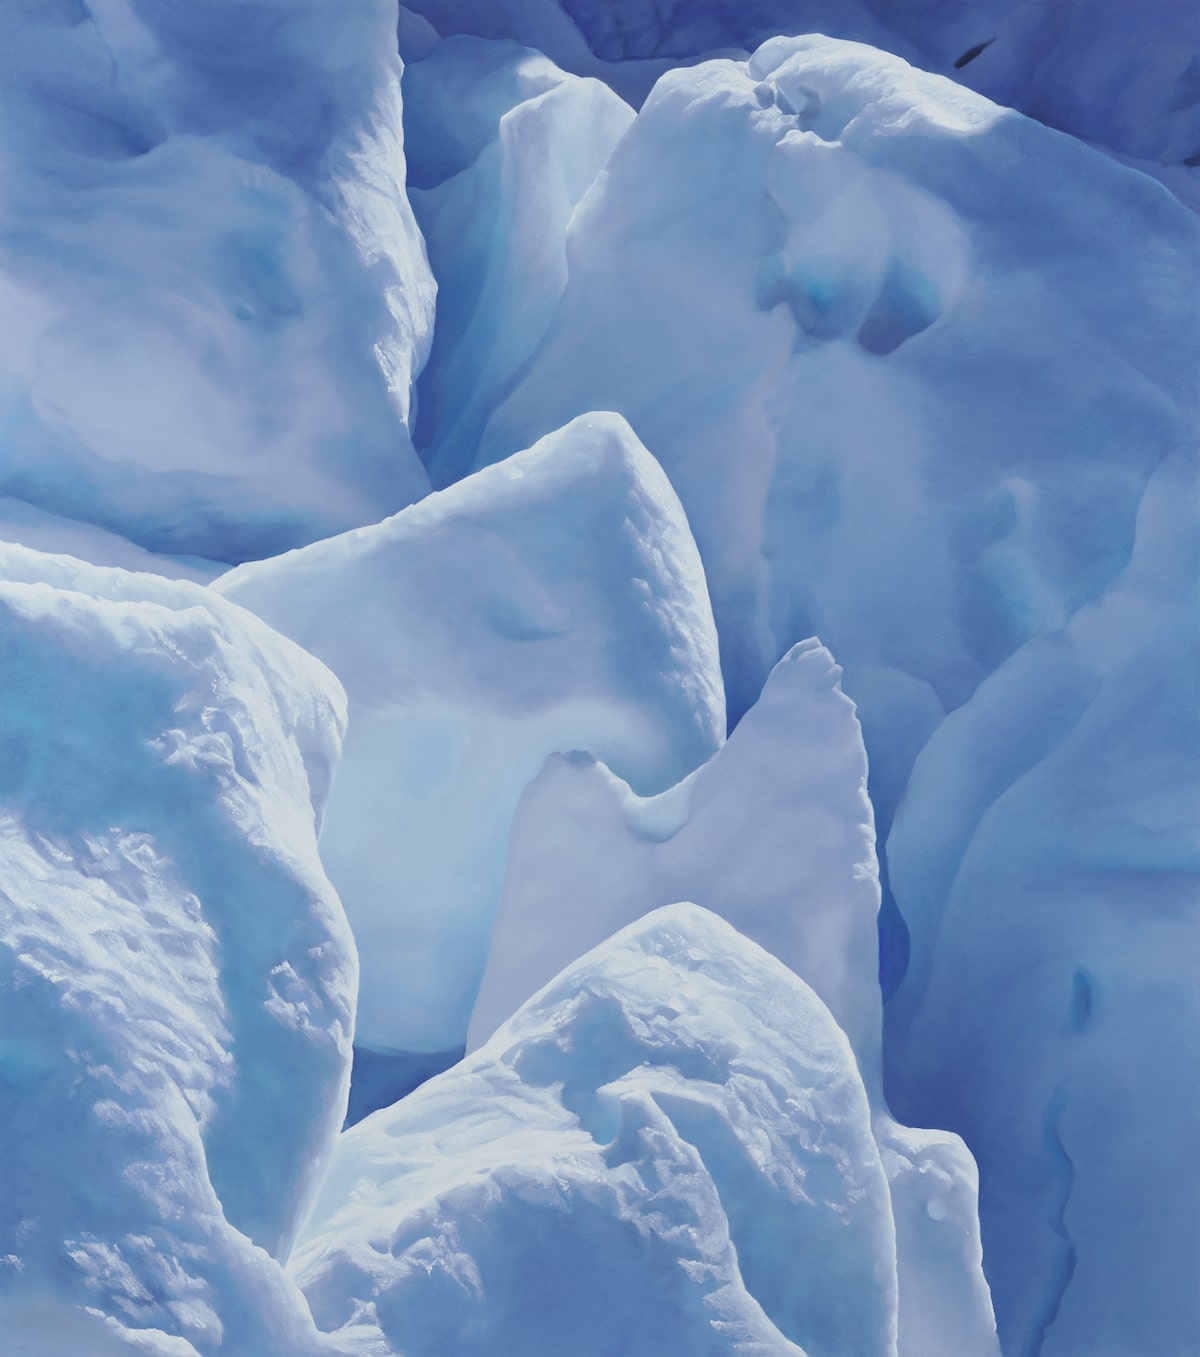 Perito Moreno Glacier by Zaria Forman